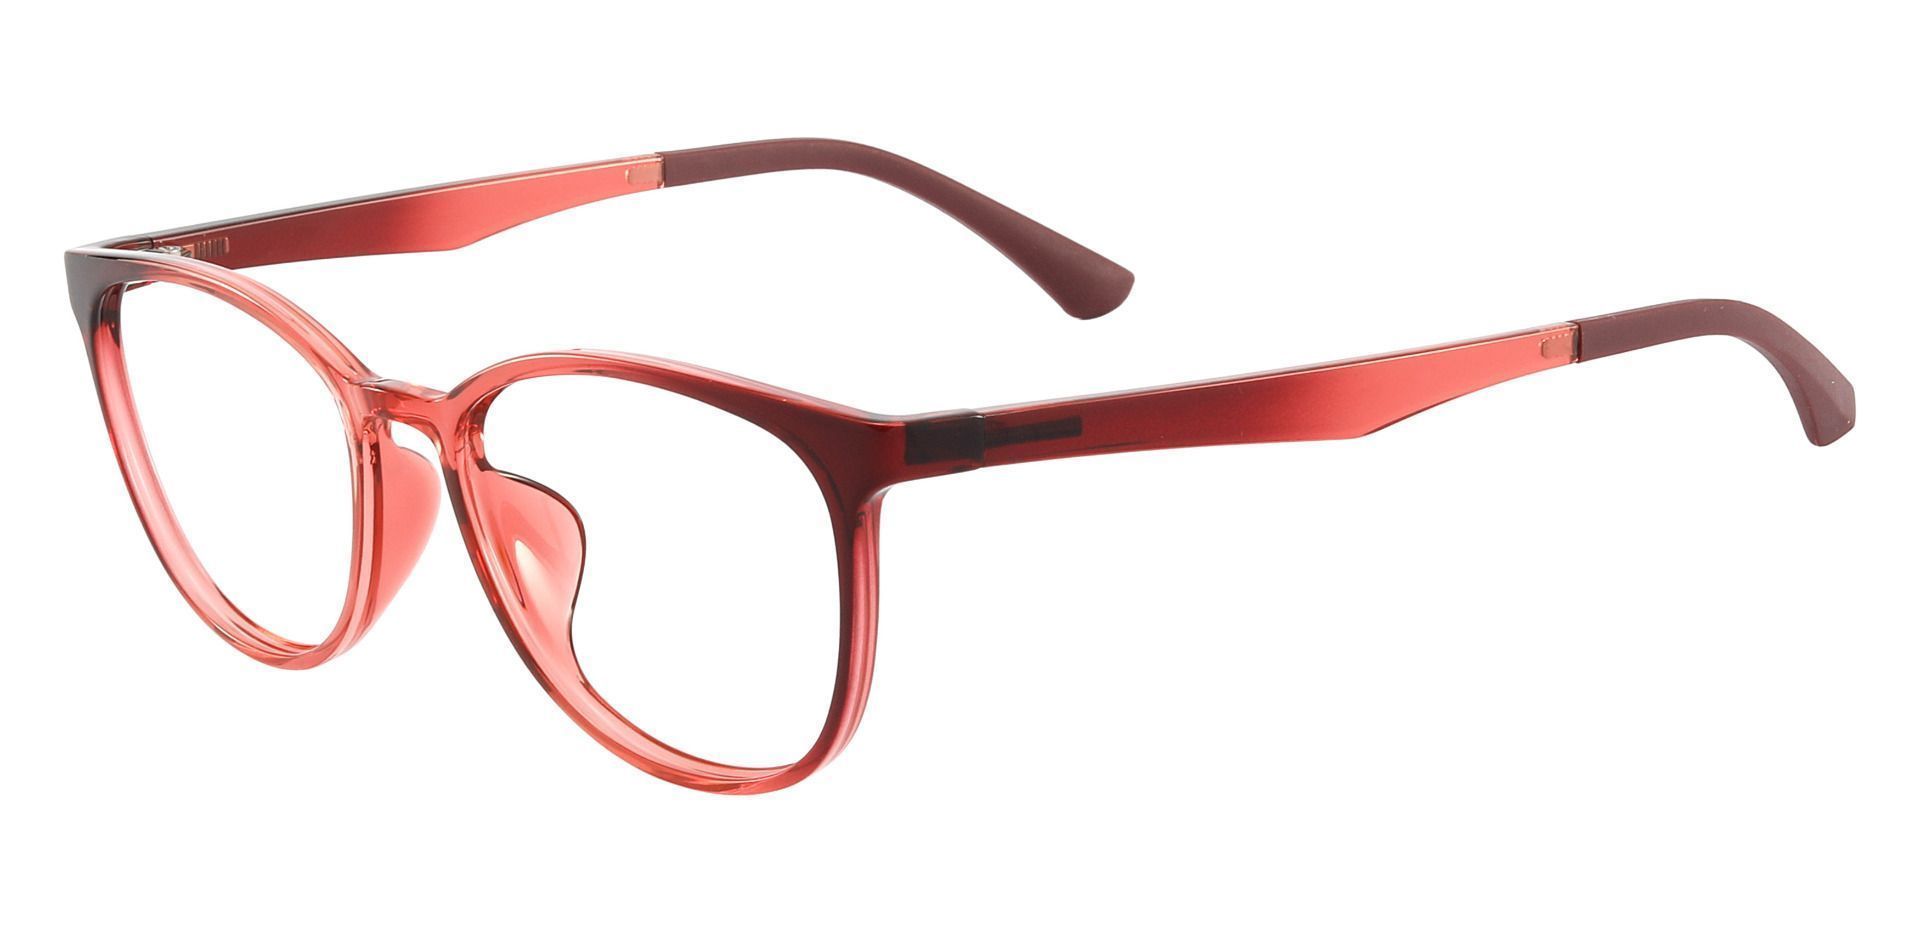 Pembroke Oval Reading Glasses - Pink